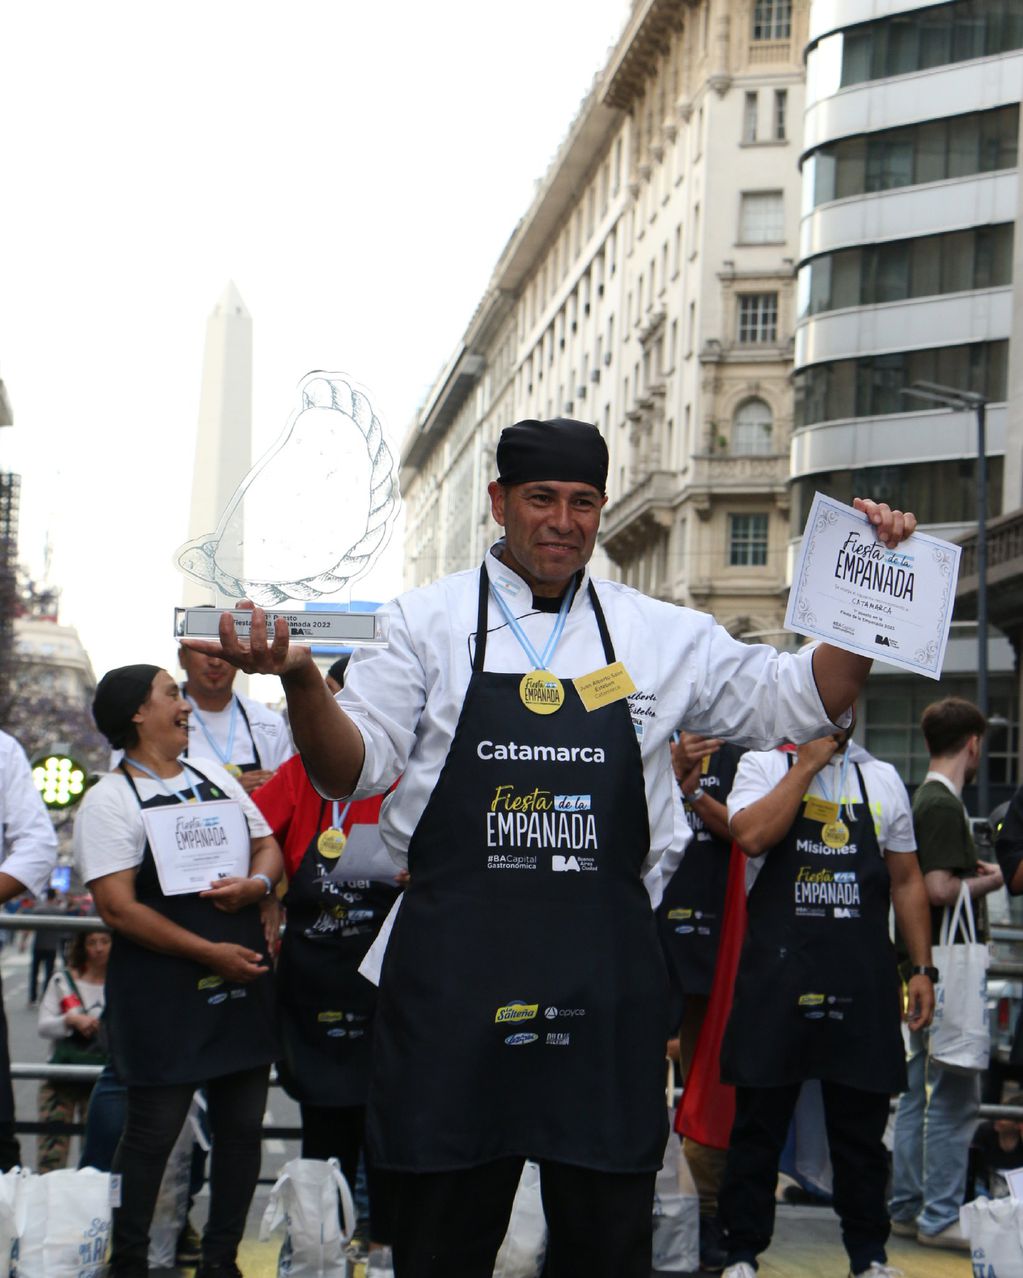 Catamarca ganó como la mejor empanada de la Argentina